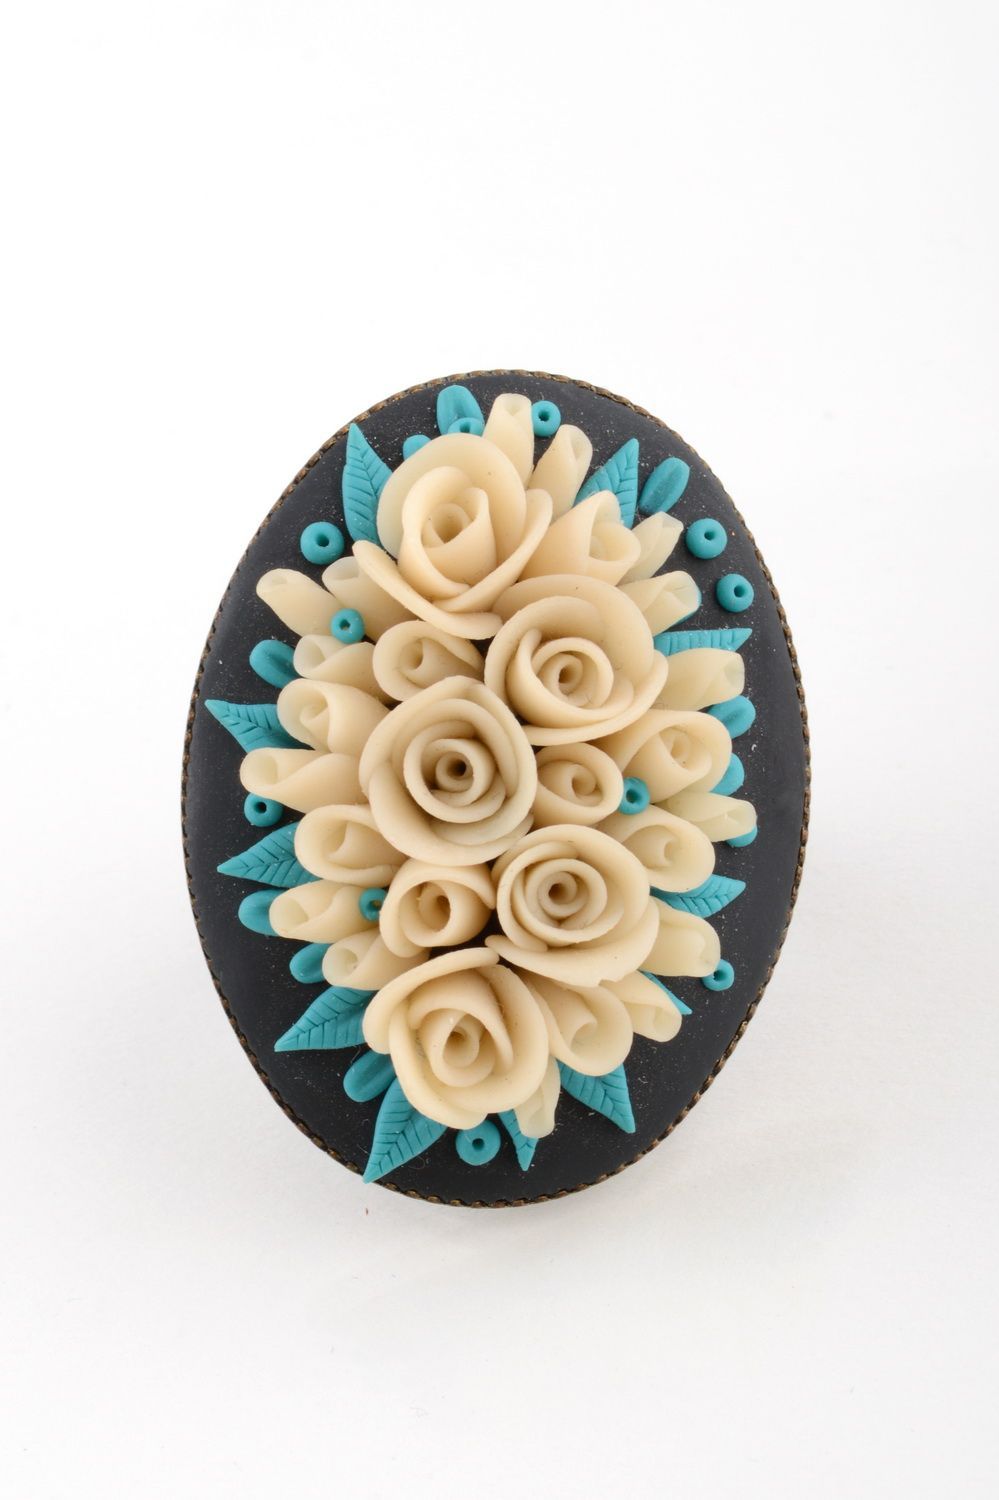 Перстень из полимерной глины и металла ручной работы с объемными цветочками фото 2